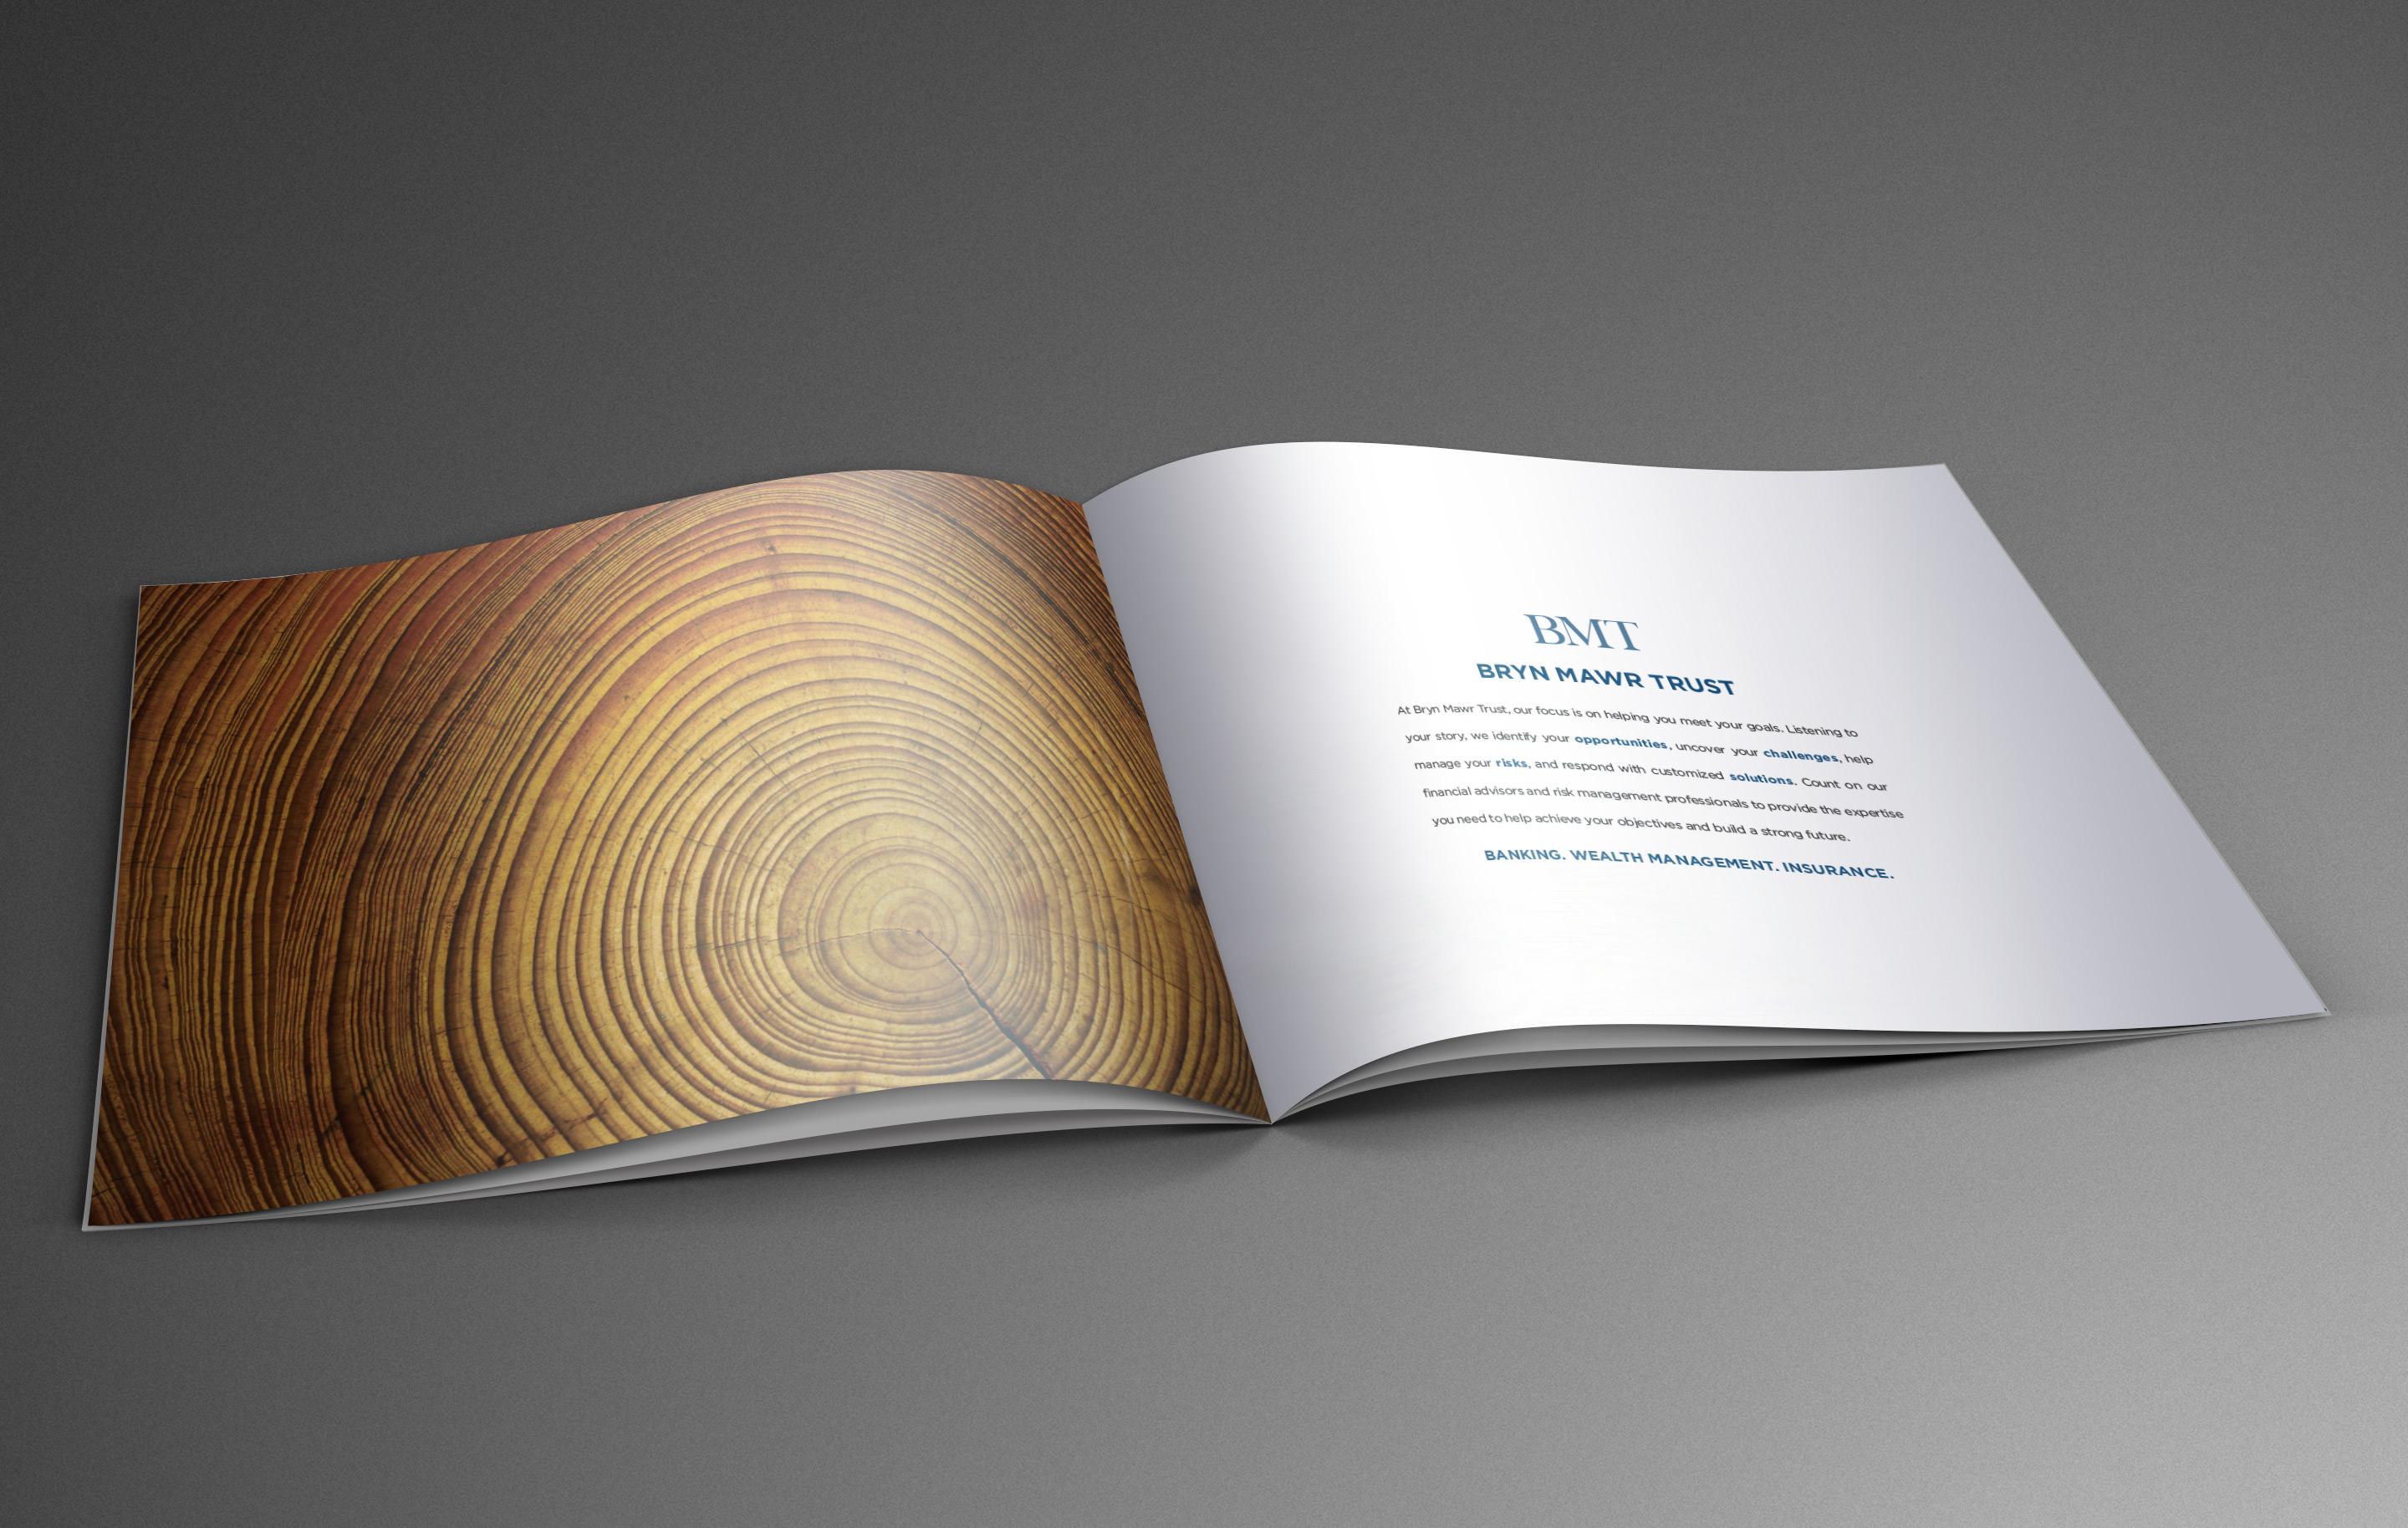 Bryn Mawr Trust brochure inside design by advertising agency in Philadelphia